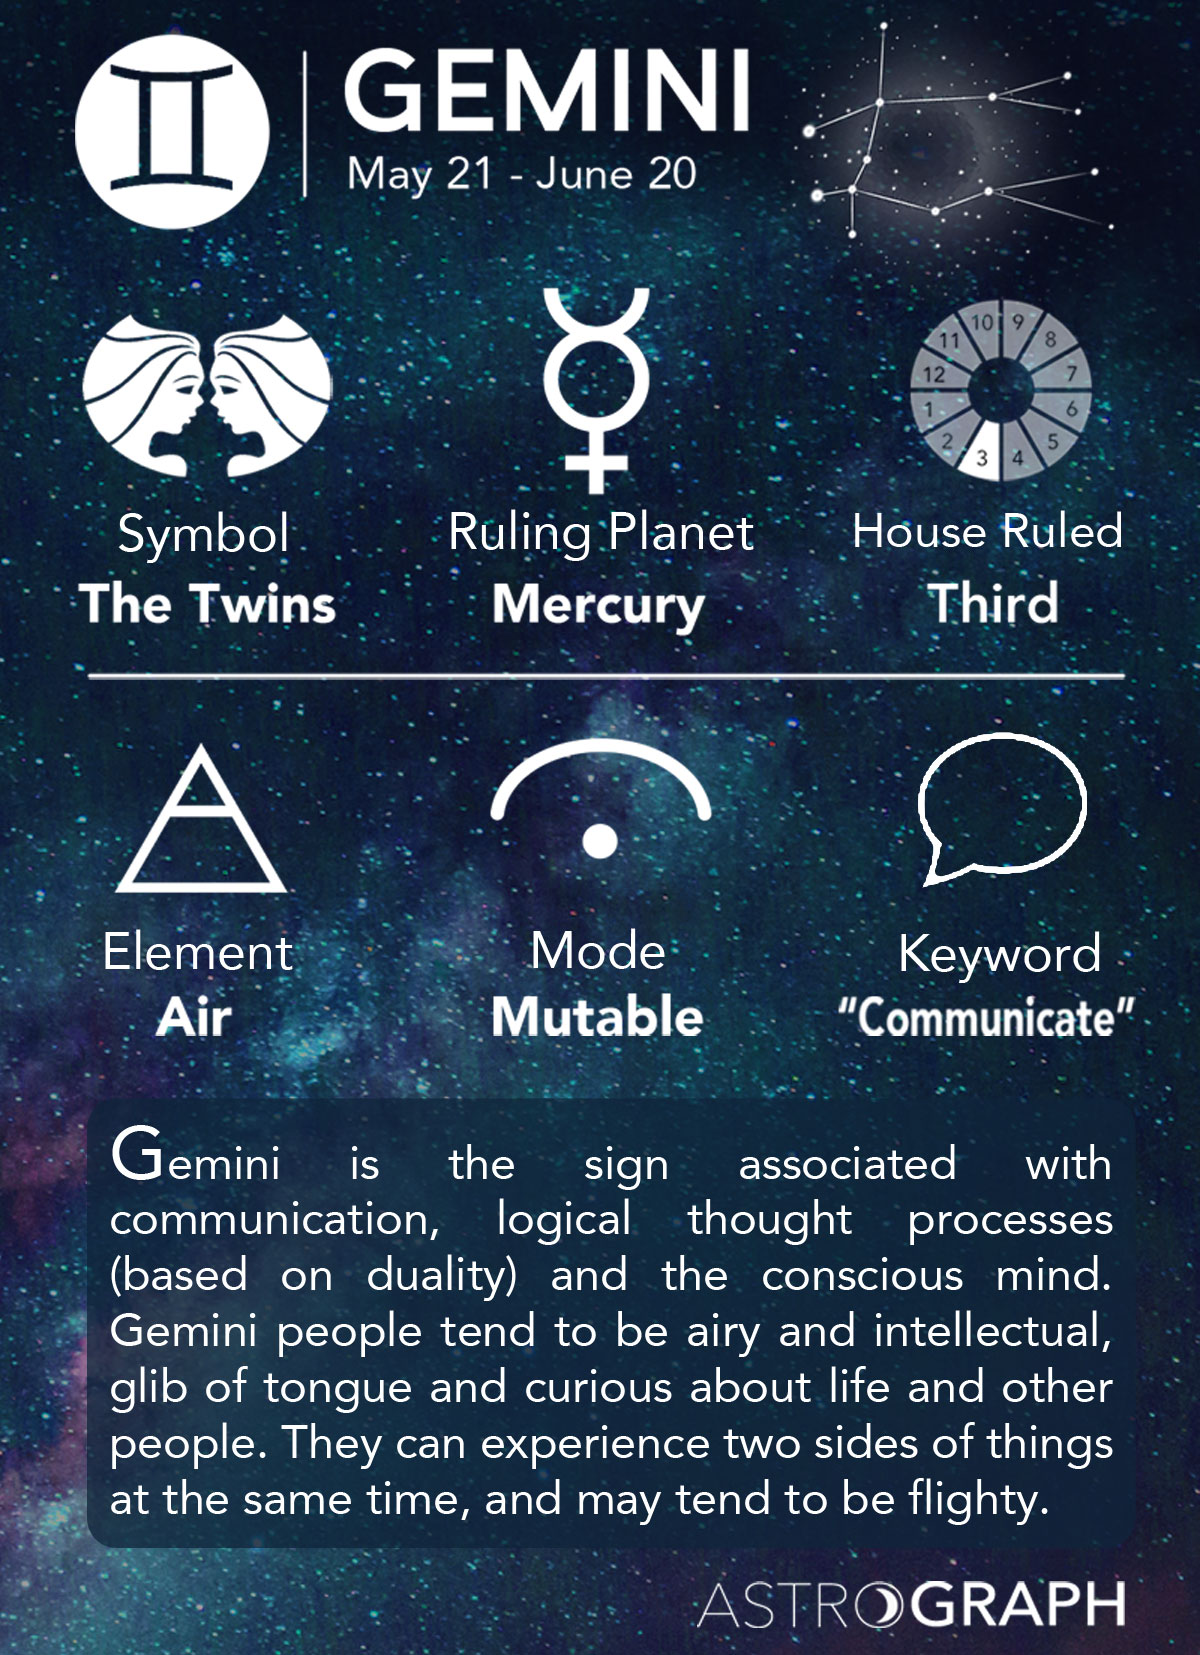 What are Gemini dates?